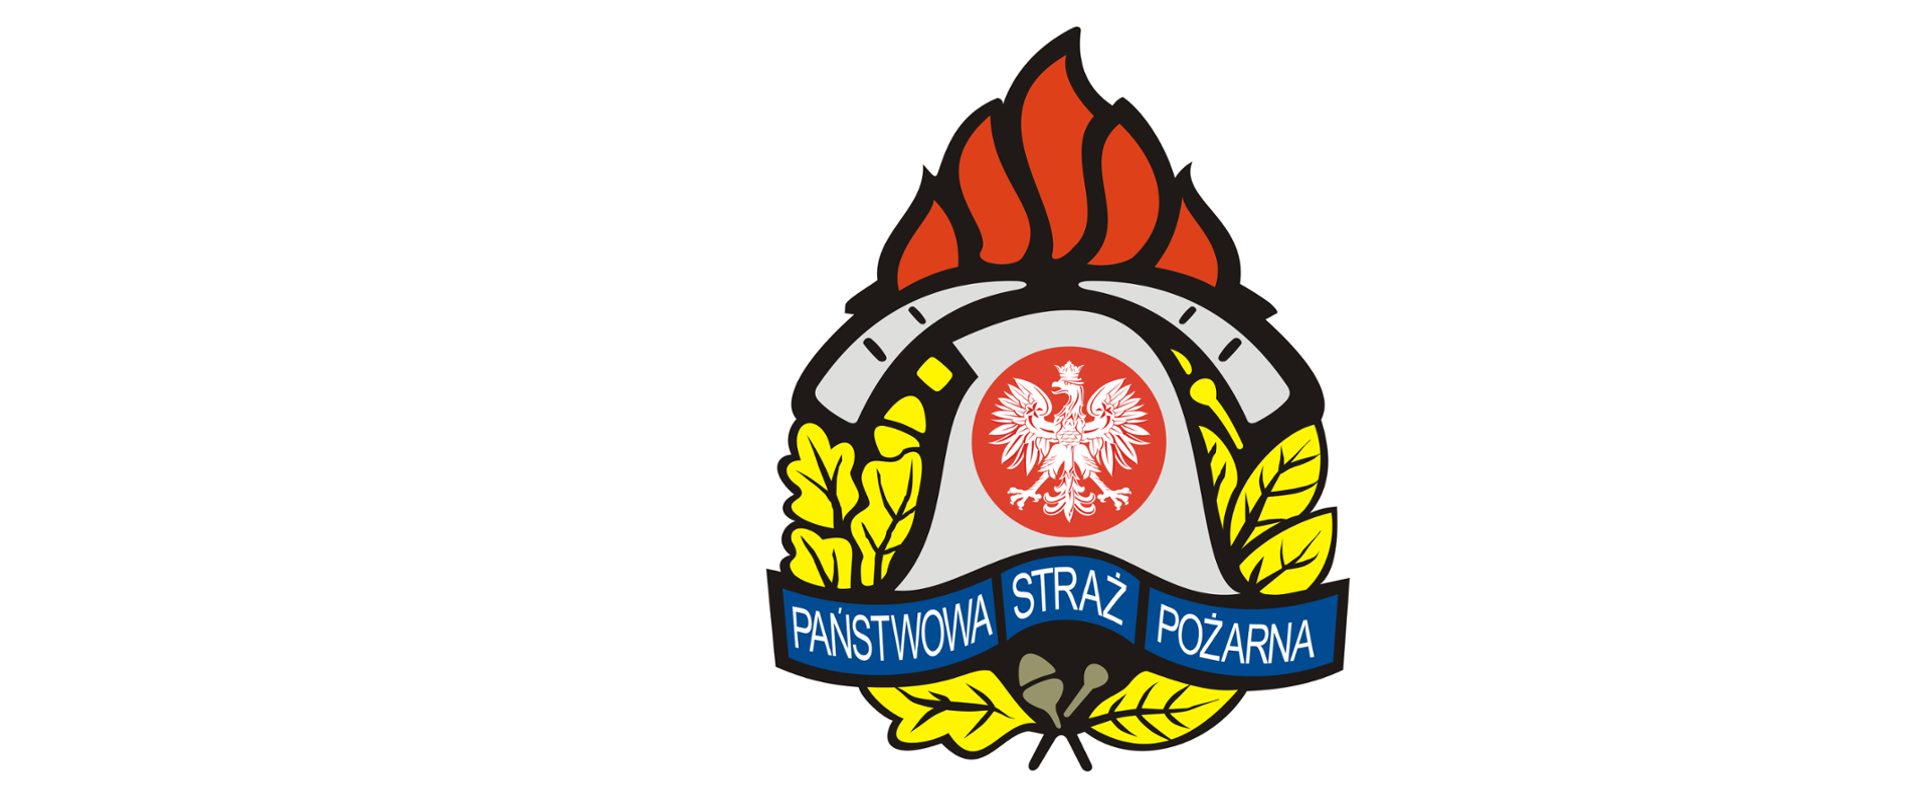 Zdjęcie przedstawia logo PSP z centralnie umieszczonym orłem i napisem Państwowa Straż Pożarna